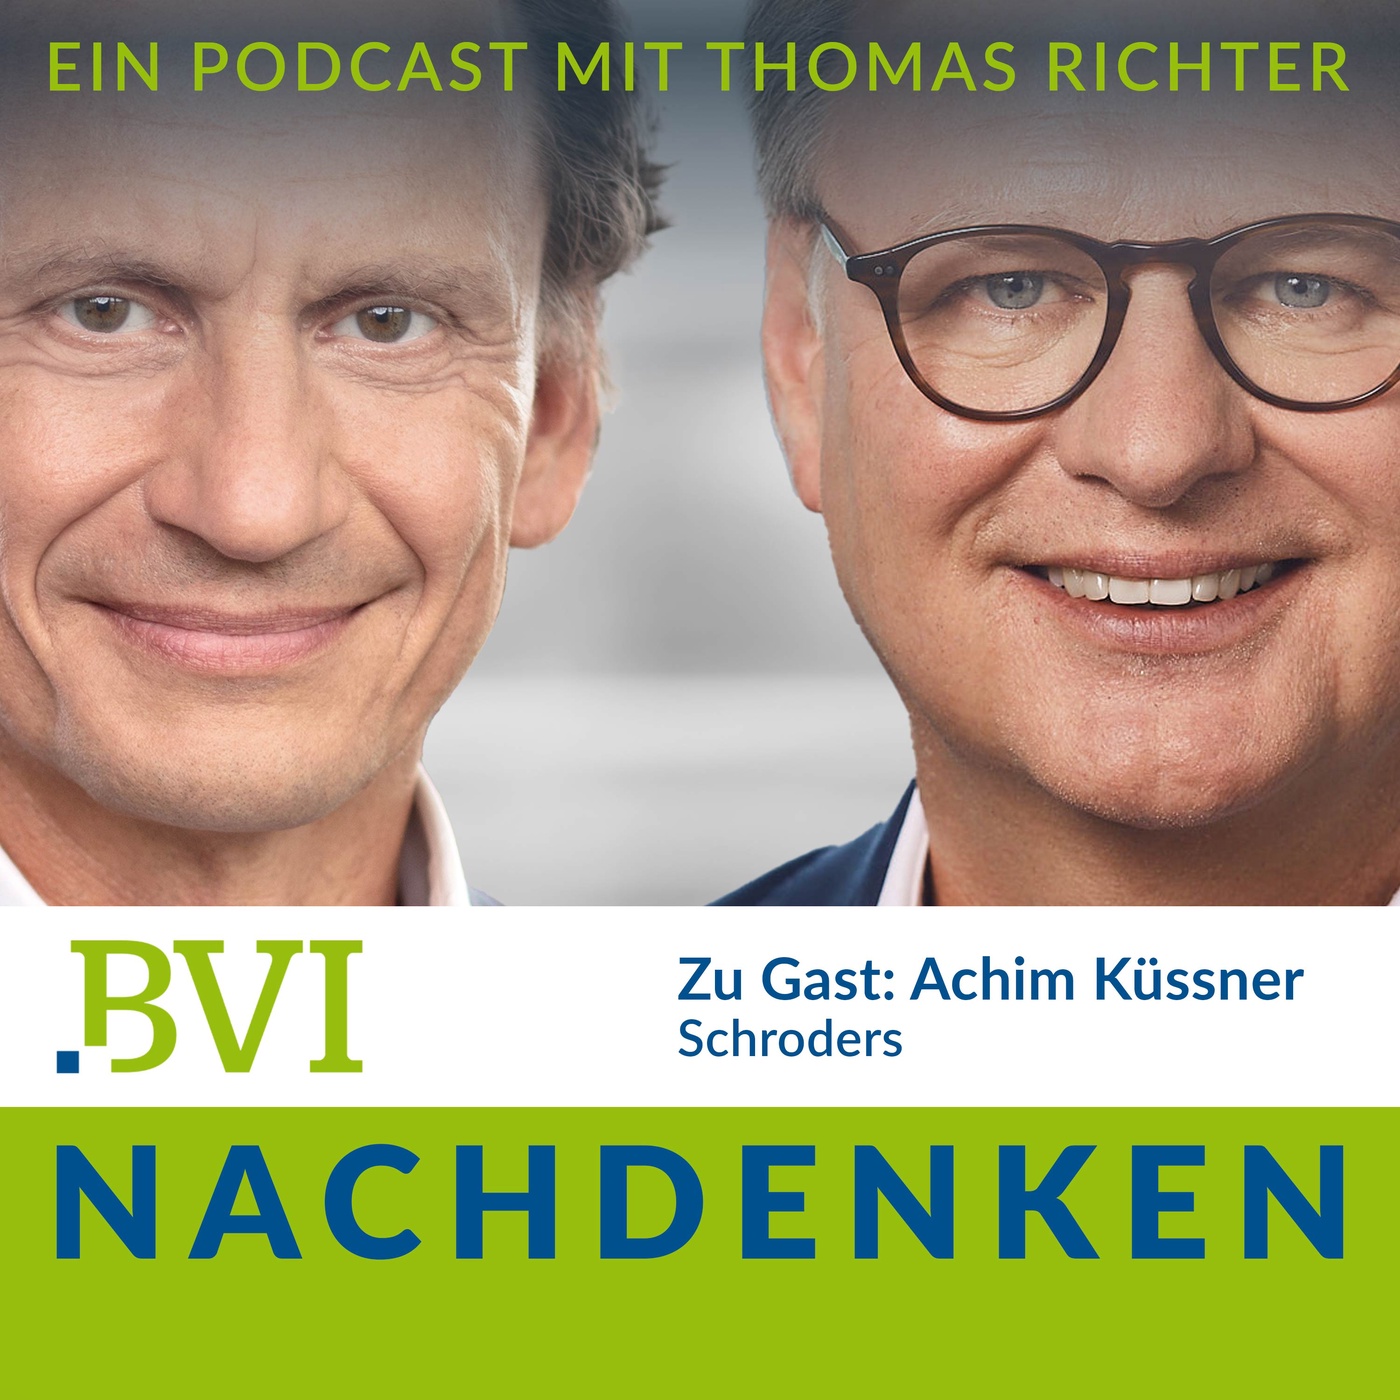 Episode 23: Gespräch mit Achim Küssner über 30 Jahre Fondsvertrieb